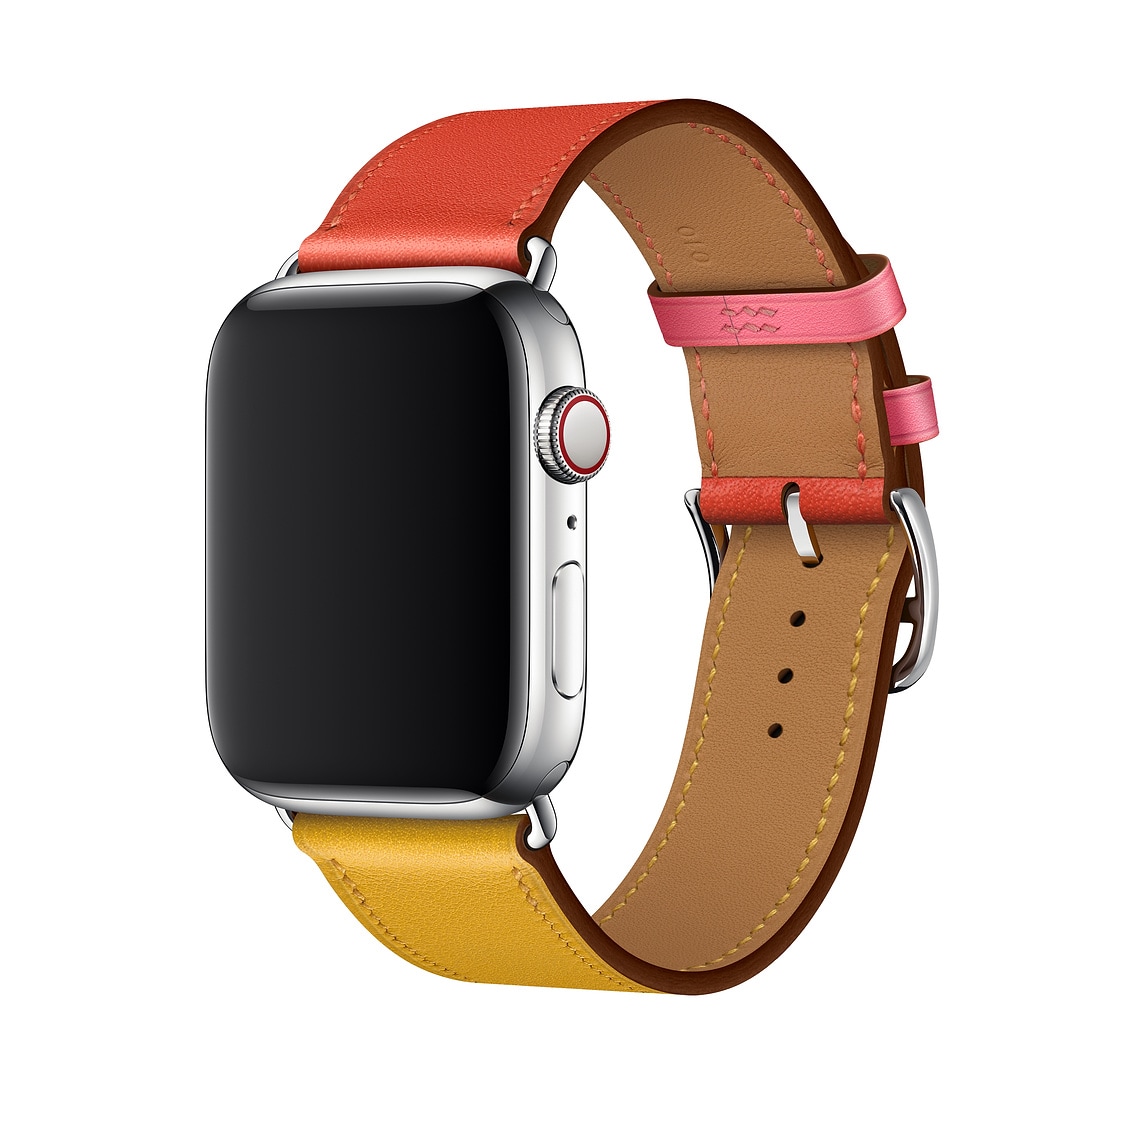 Apple launches new bracelet color for Apple Watch Hermès